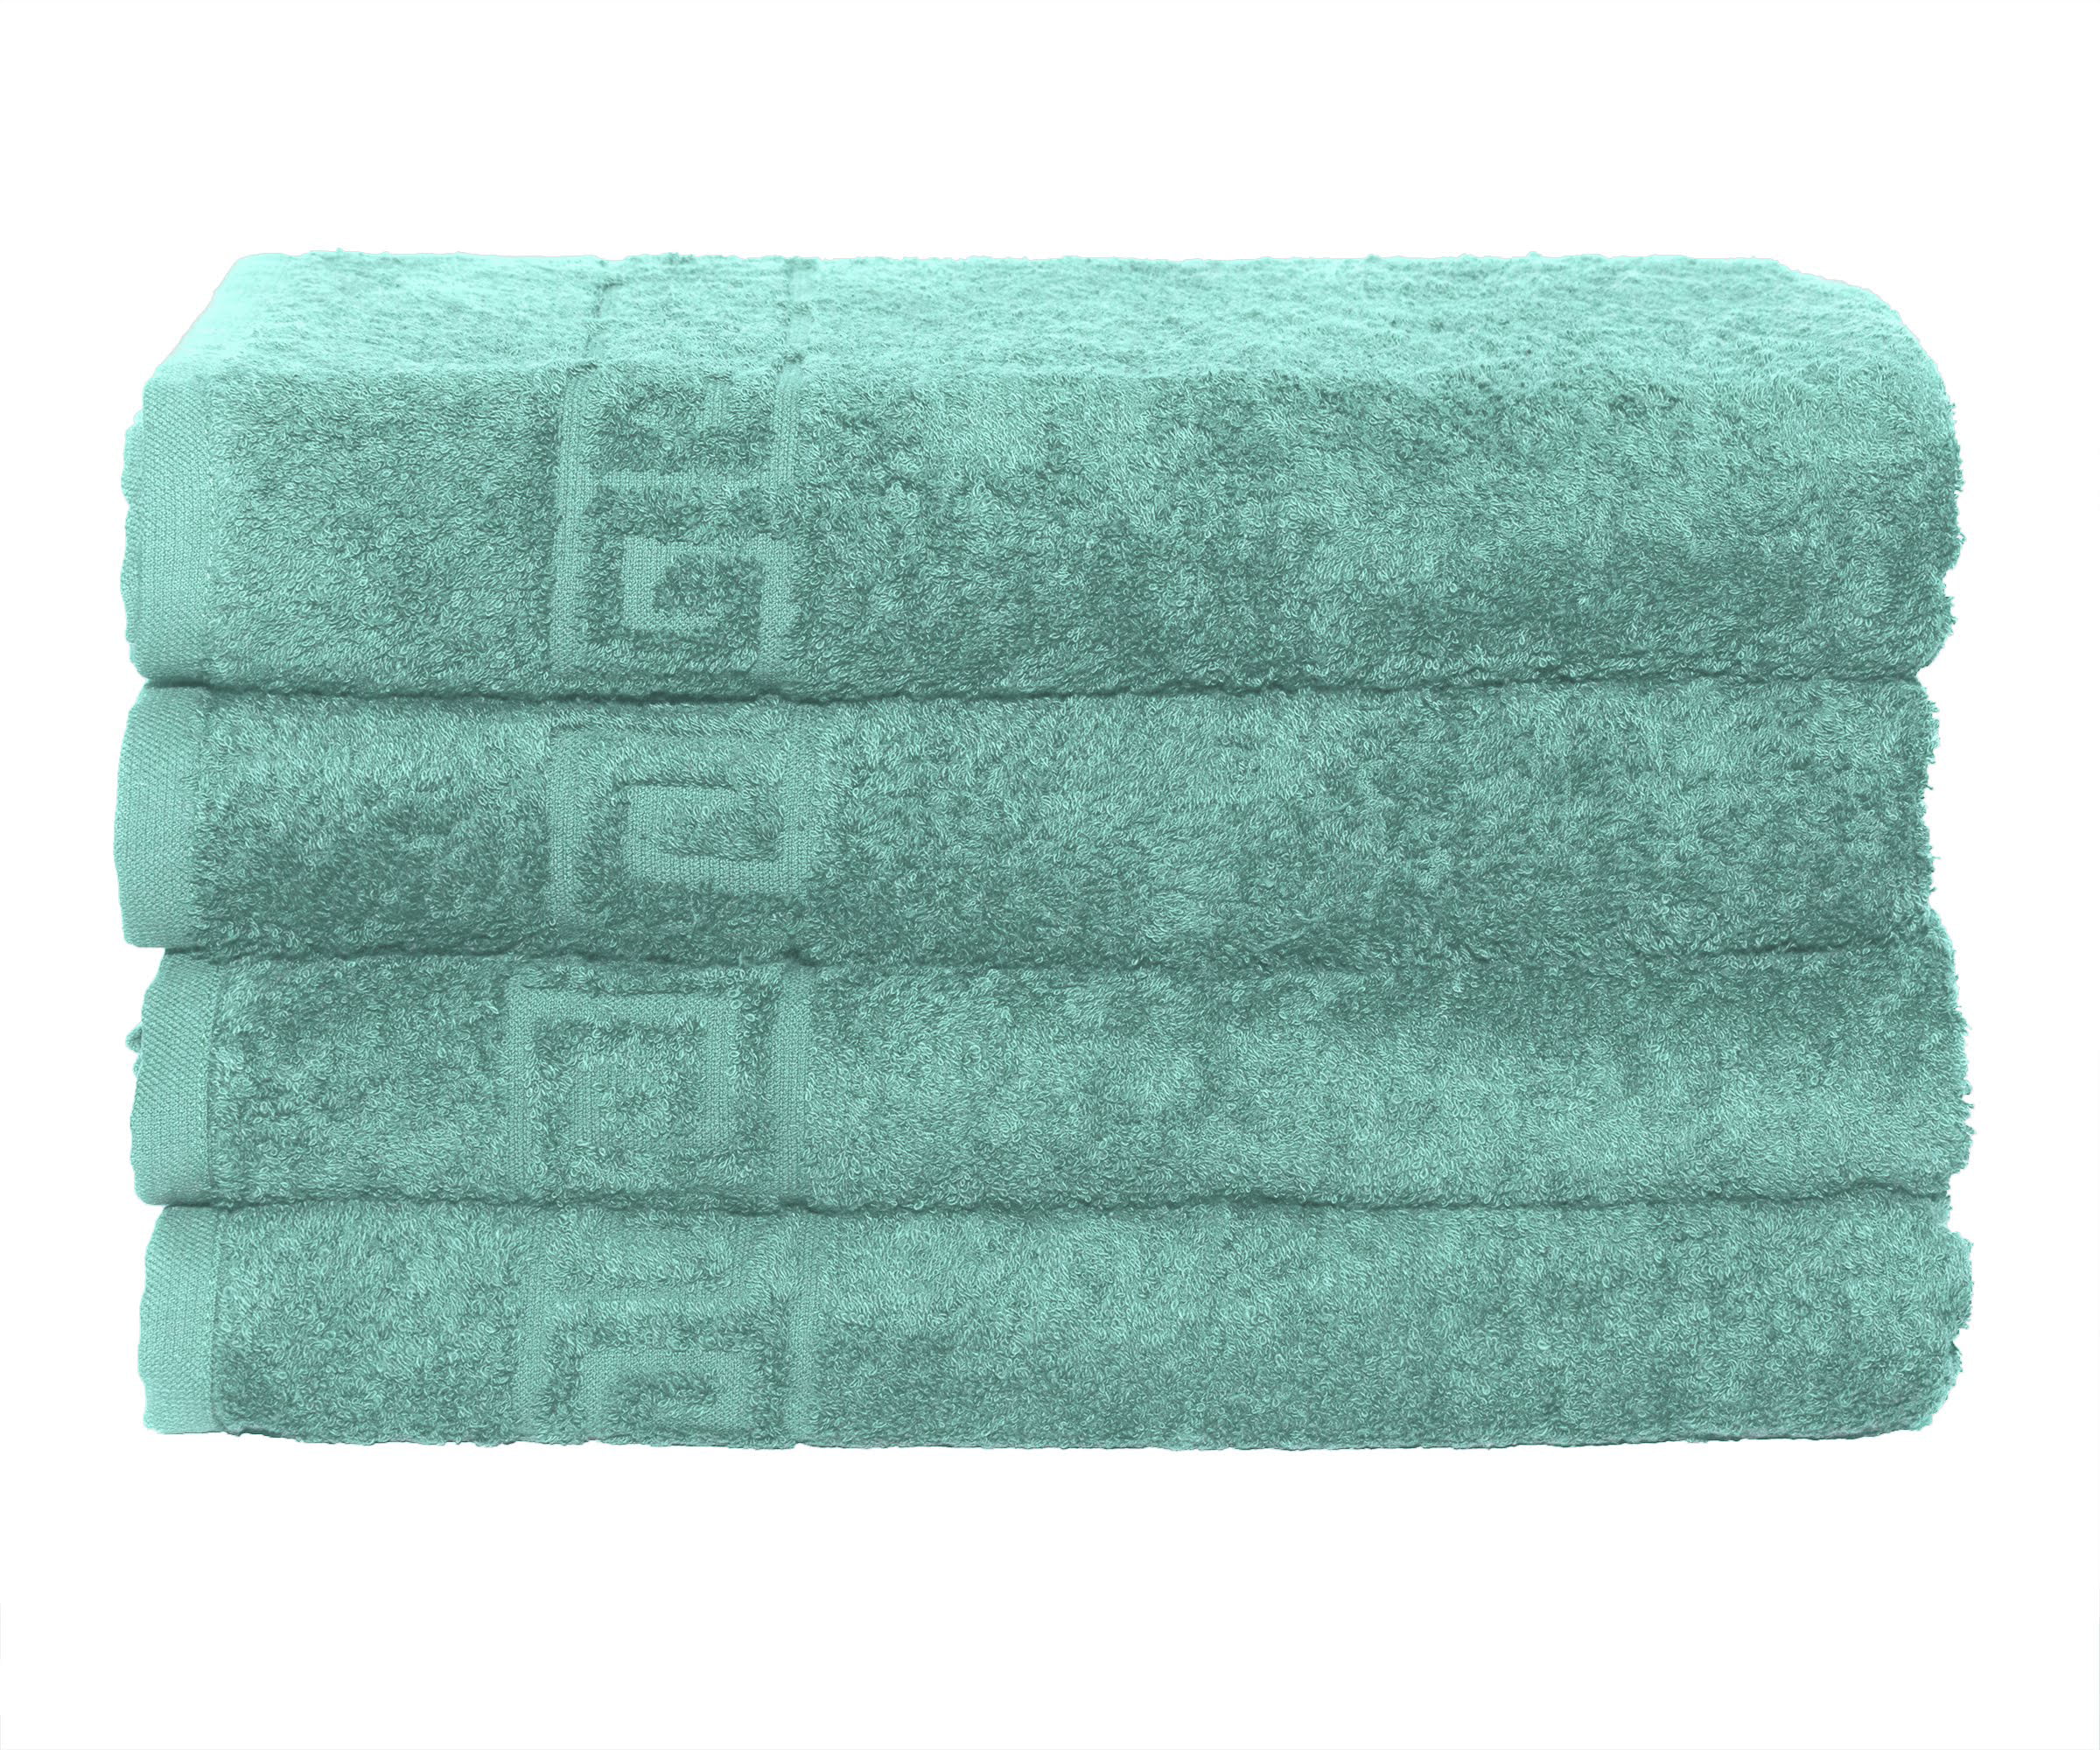 Bath Towel Cotton Set 4 Pcs Towels 28x56 Inch 500GSM Extra Soft Absorbent Contex 